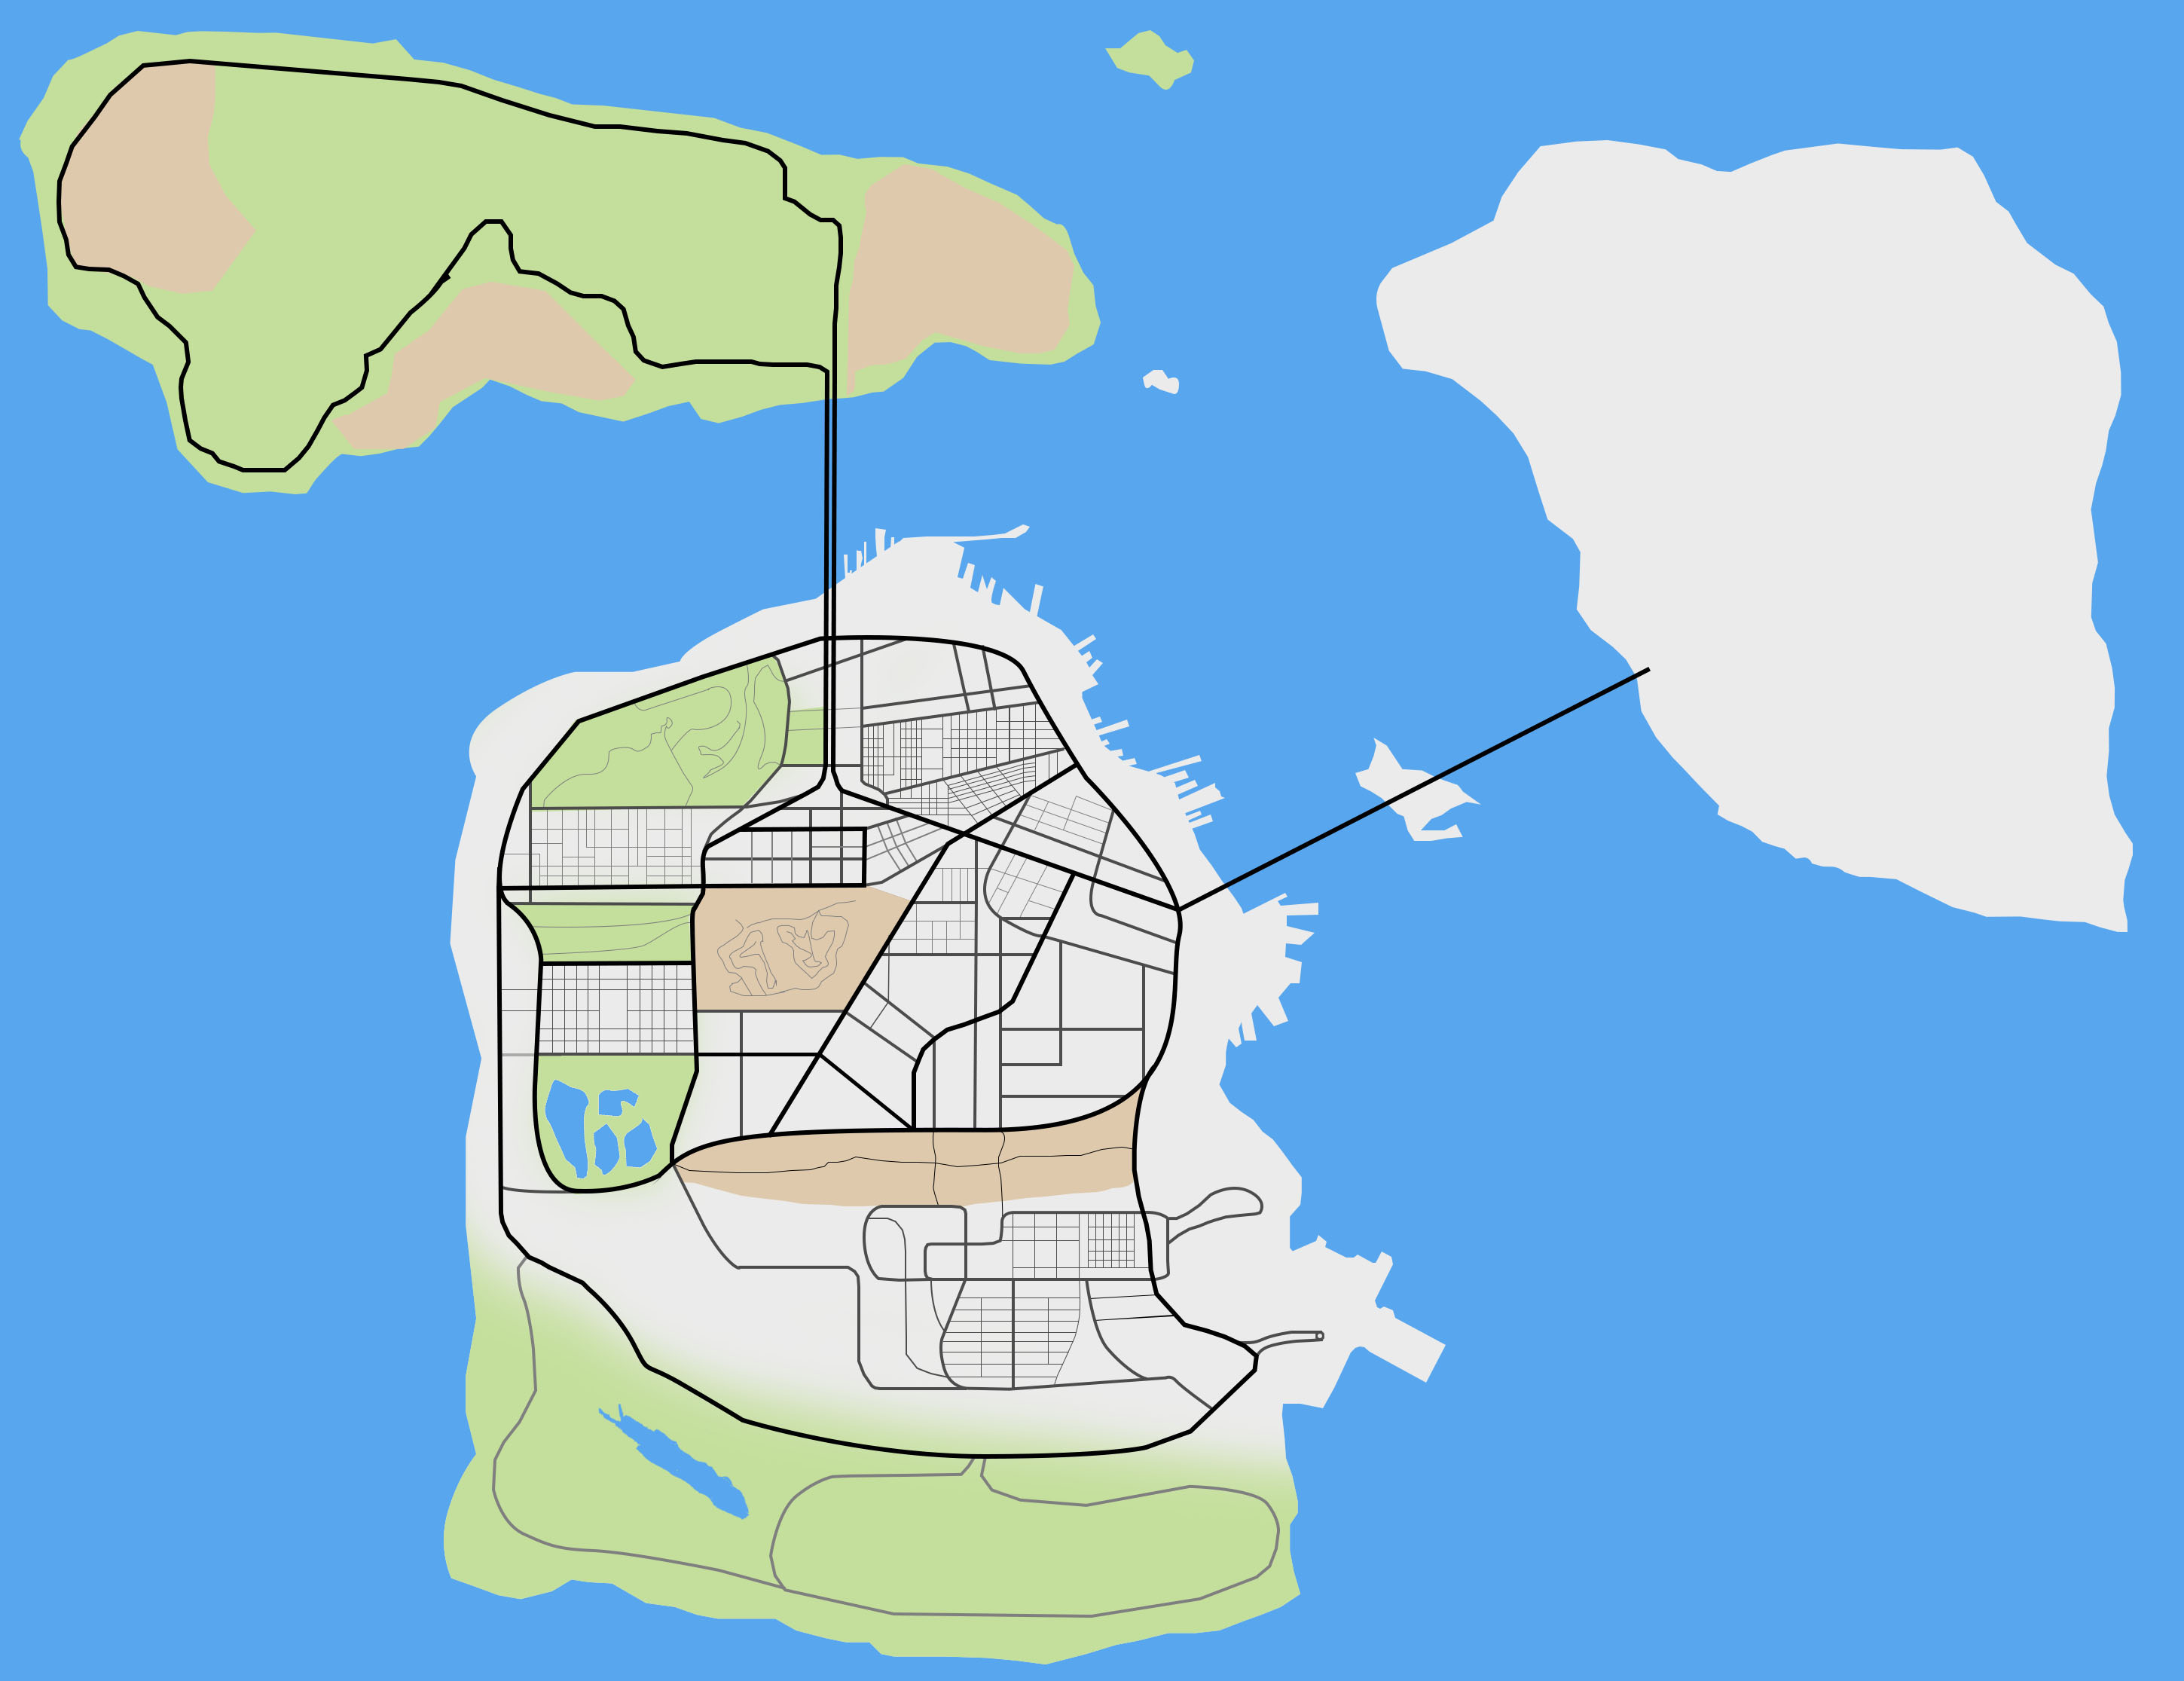 AMAZING GTA 5 Concept Map Featuring Las Venturas & San Fierro! (GTA V) 